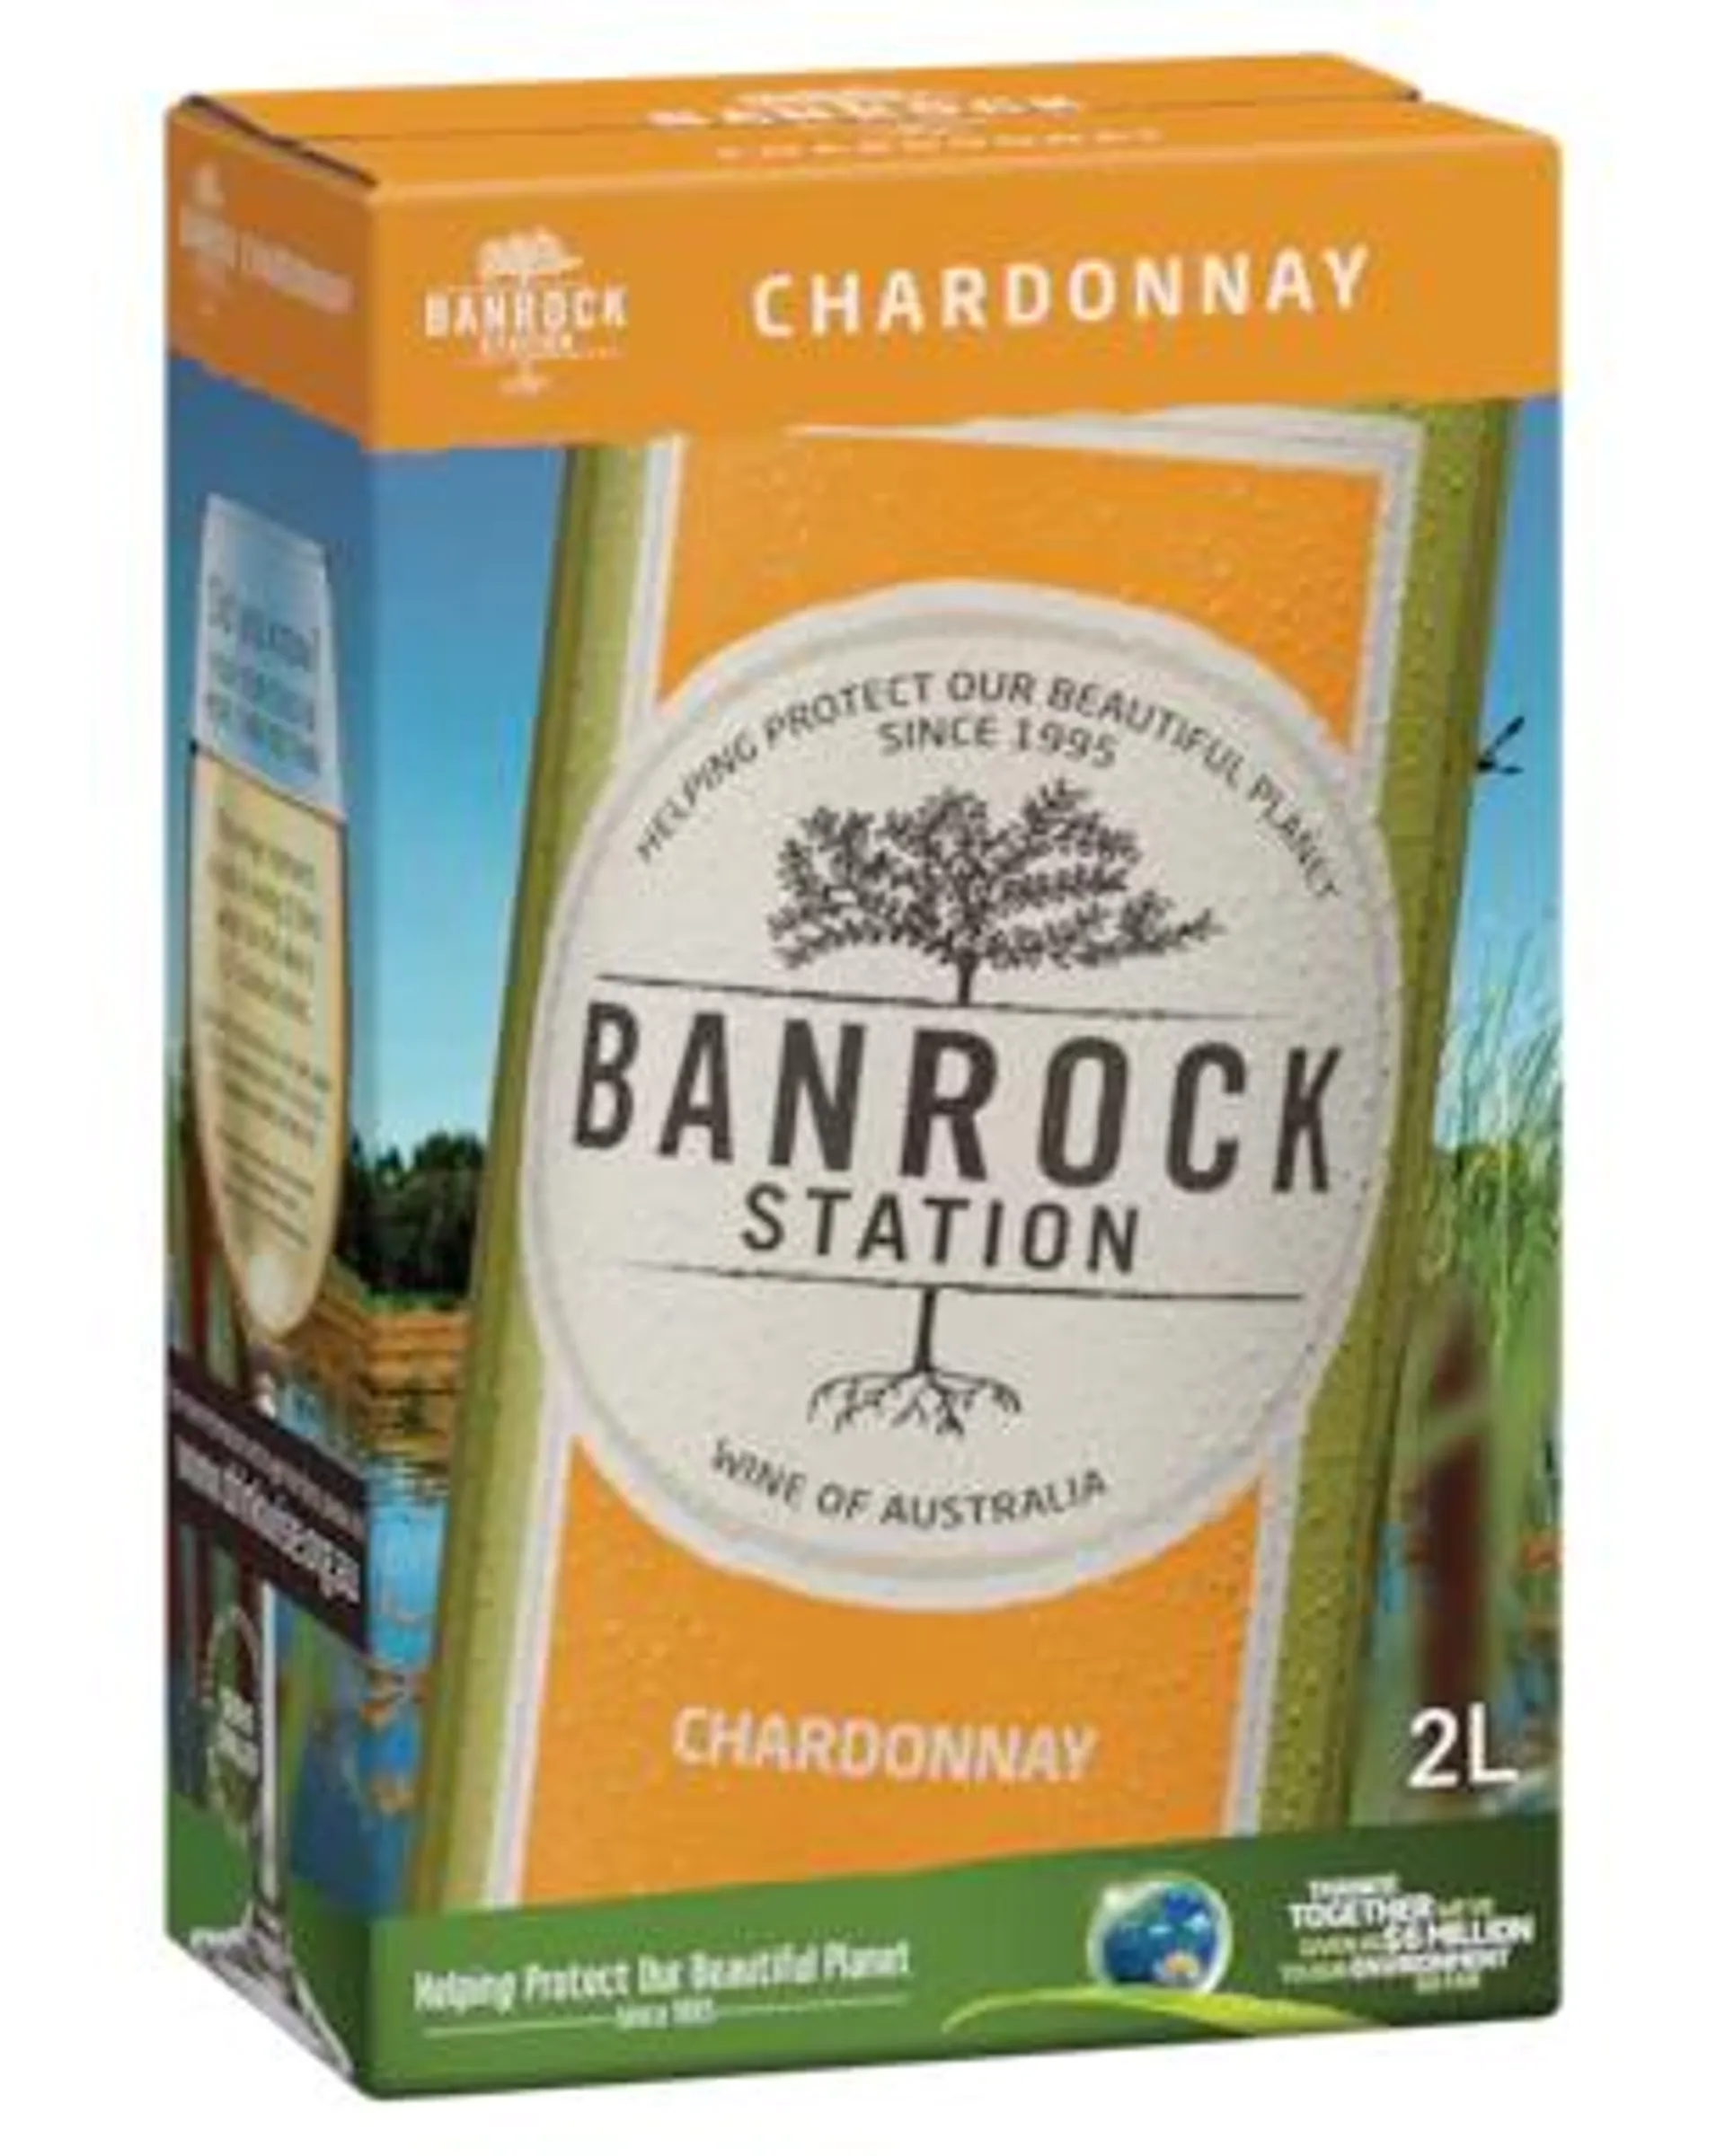 Banrock Station Chardonnay Cask 2LT